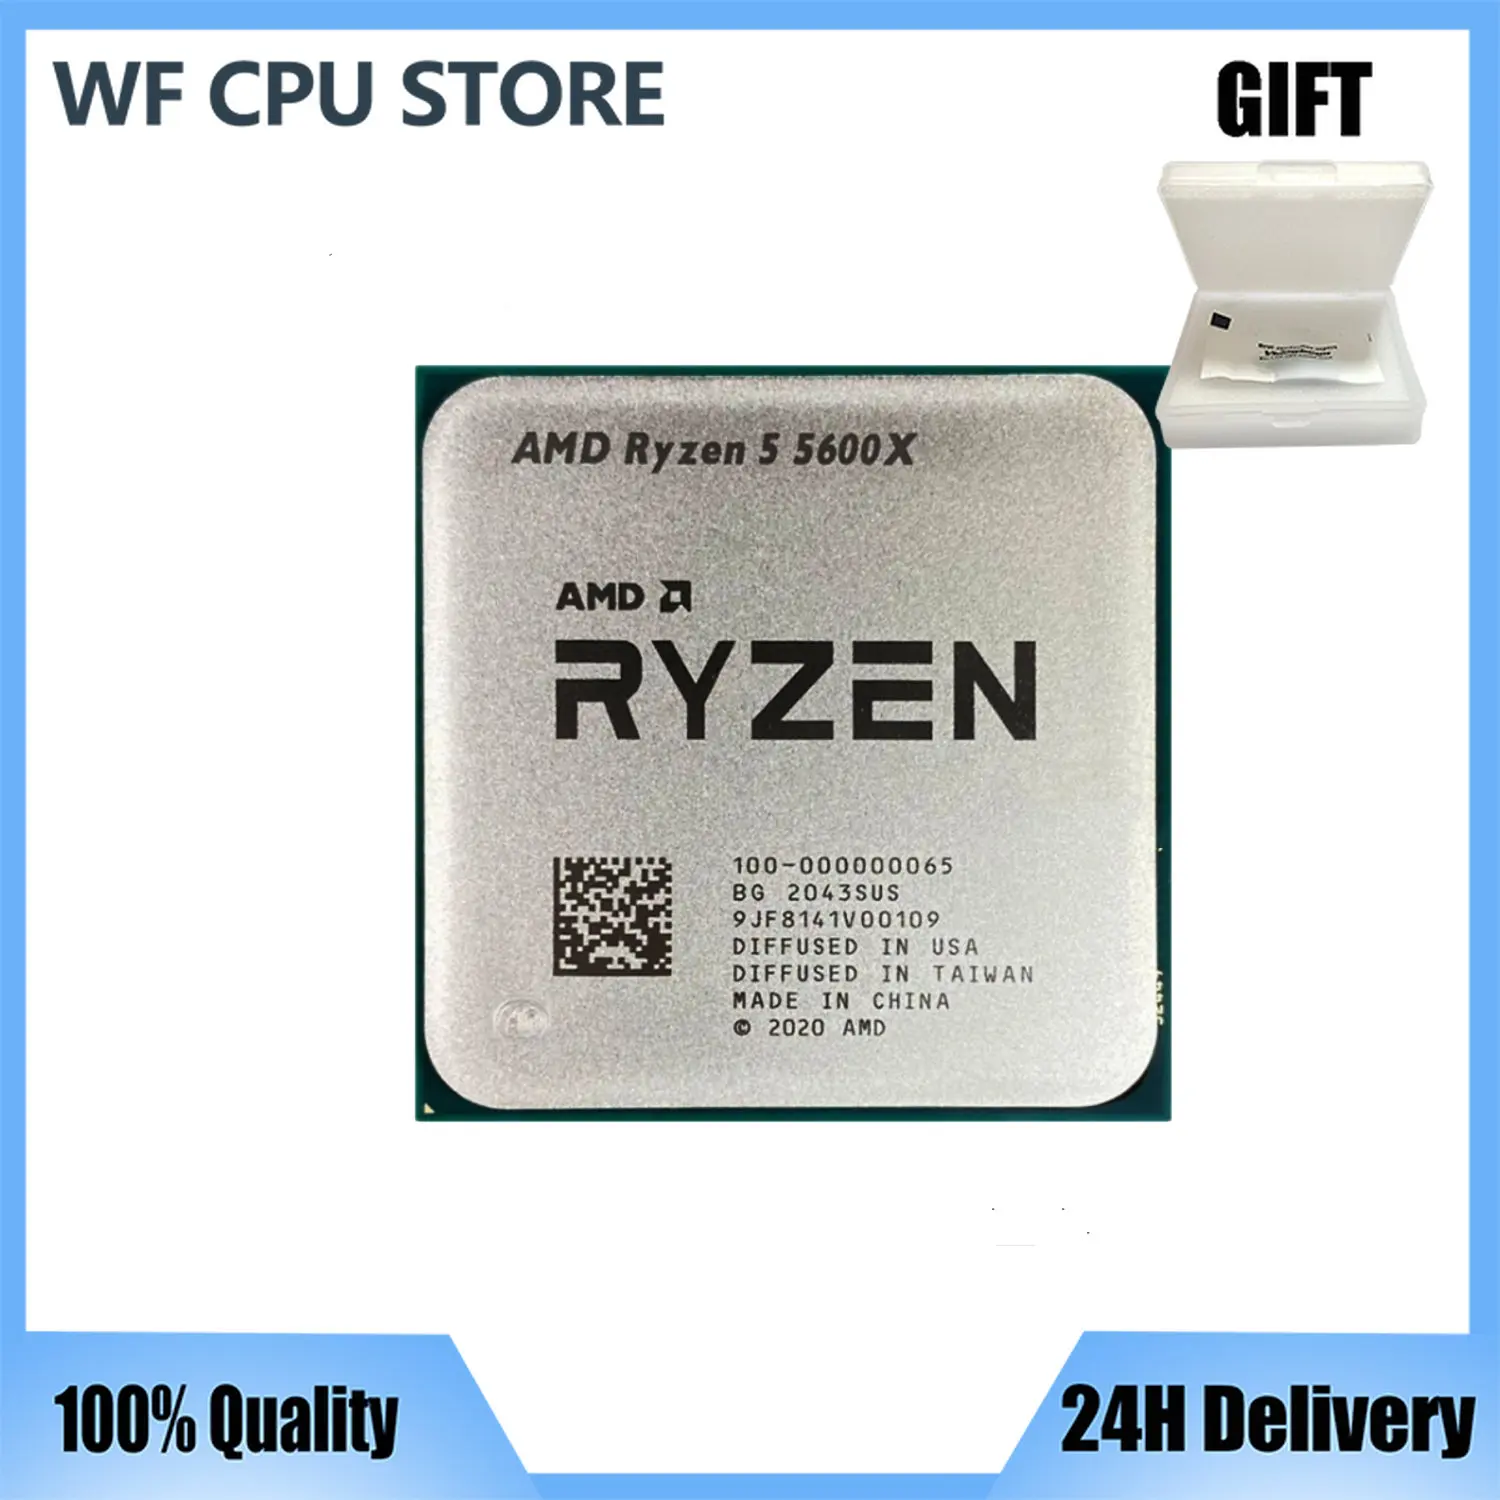 

Процессор AMD Ryzen 5 5600X R5 5600X 3,7 ГГц шестиядерный двенадцатипоточный процессор 7 нм 65 Вт L3 = 32M 100-000000065 разъем AM4